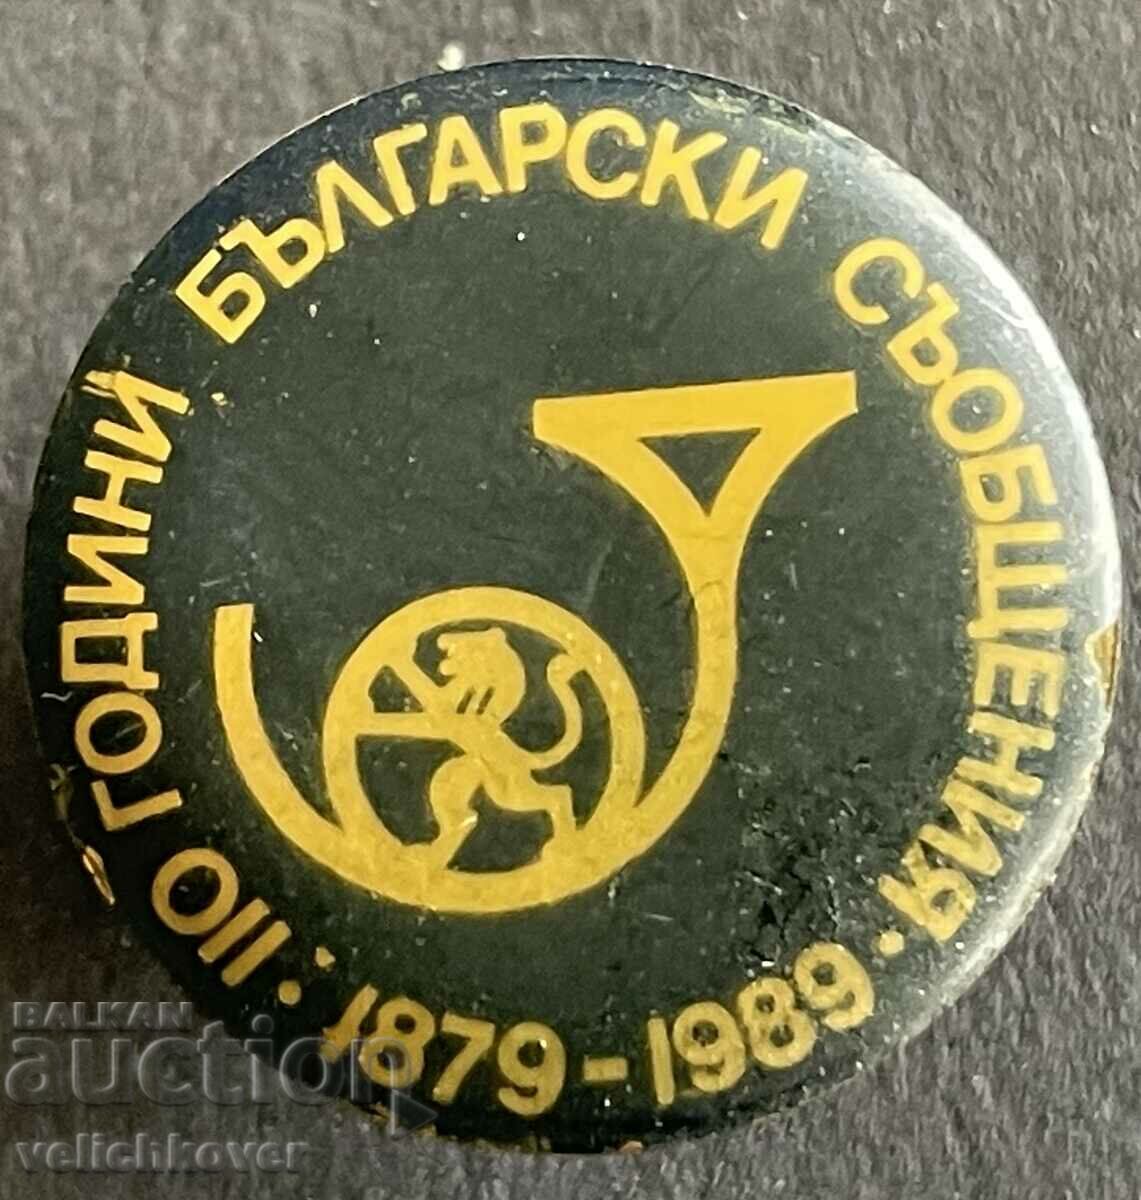 37634 Bulgaria semn 110 Mesaje bulgare 1989